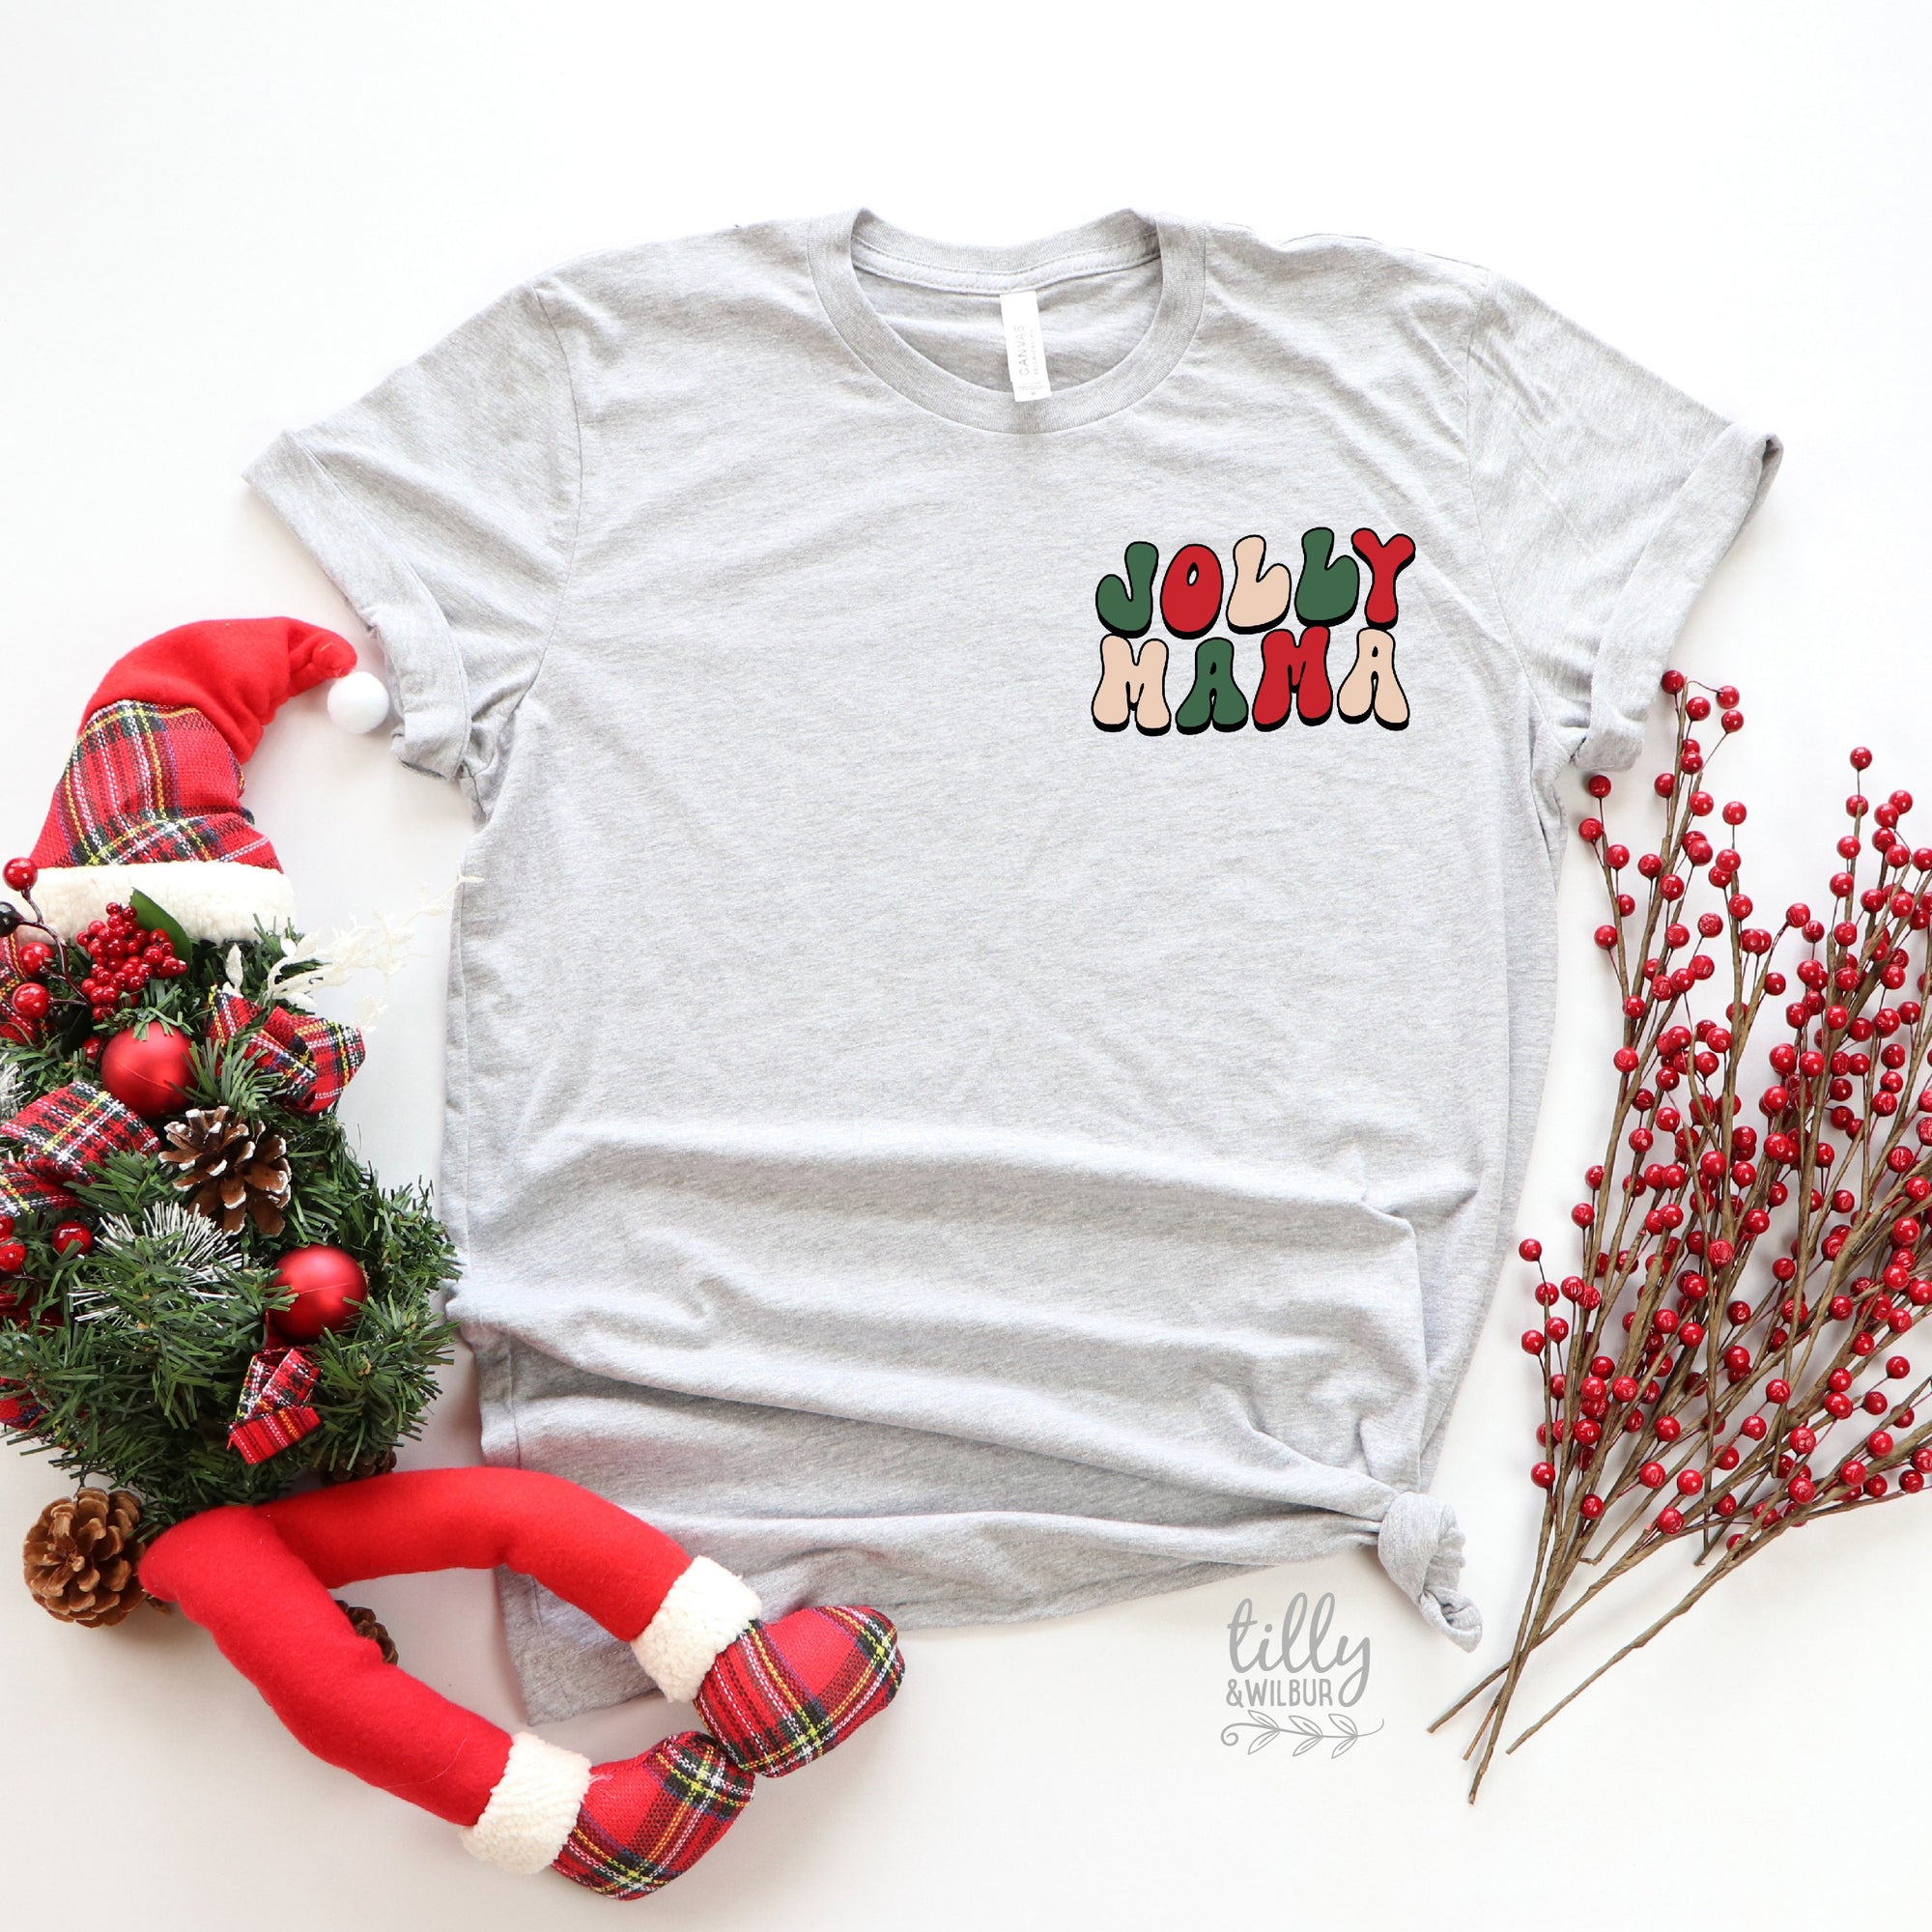 Jolly Mama Christmas T-Shirt, Christmas Tree T-Shirt, Jolly Mama T-Shirt, Family Holiday Tee, Women's Christmas T-Shirt, Xmas Gift For Her